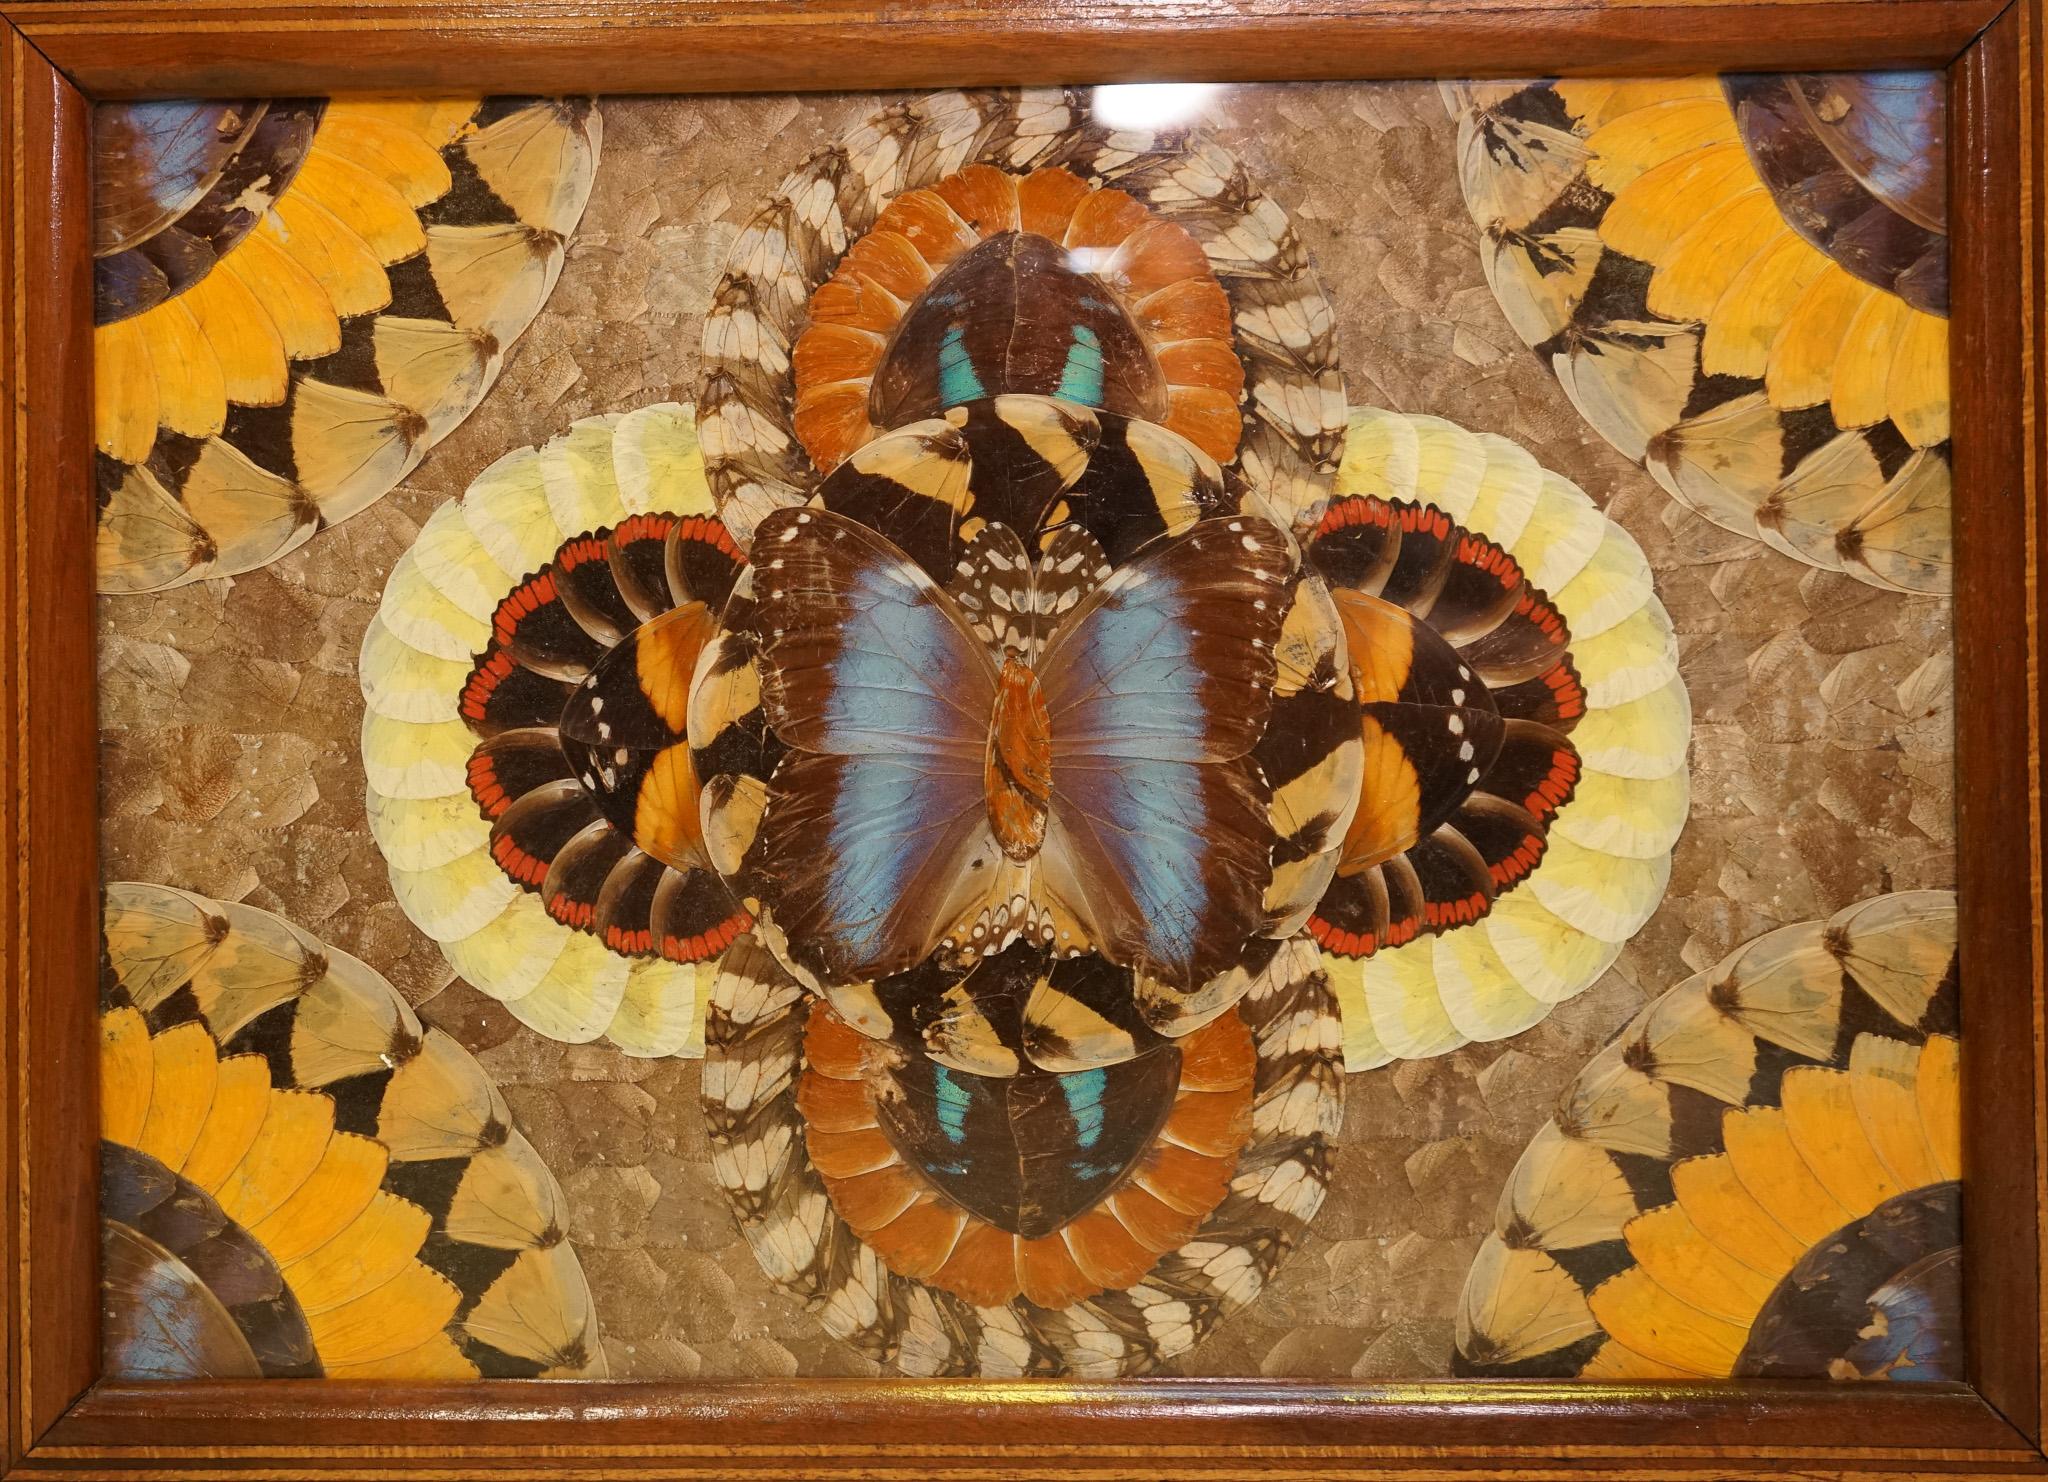 Nous avons le plaisir de vous présenter ce plateau vintage en bois incrusté brésilien avec de véritables ailes de papillon Morphos.

Un plateau en bois incrusté brésilien avec de véritables ailes de papillon Morphos est une œuvre d'art étonnante